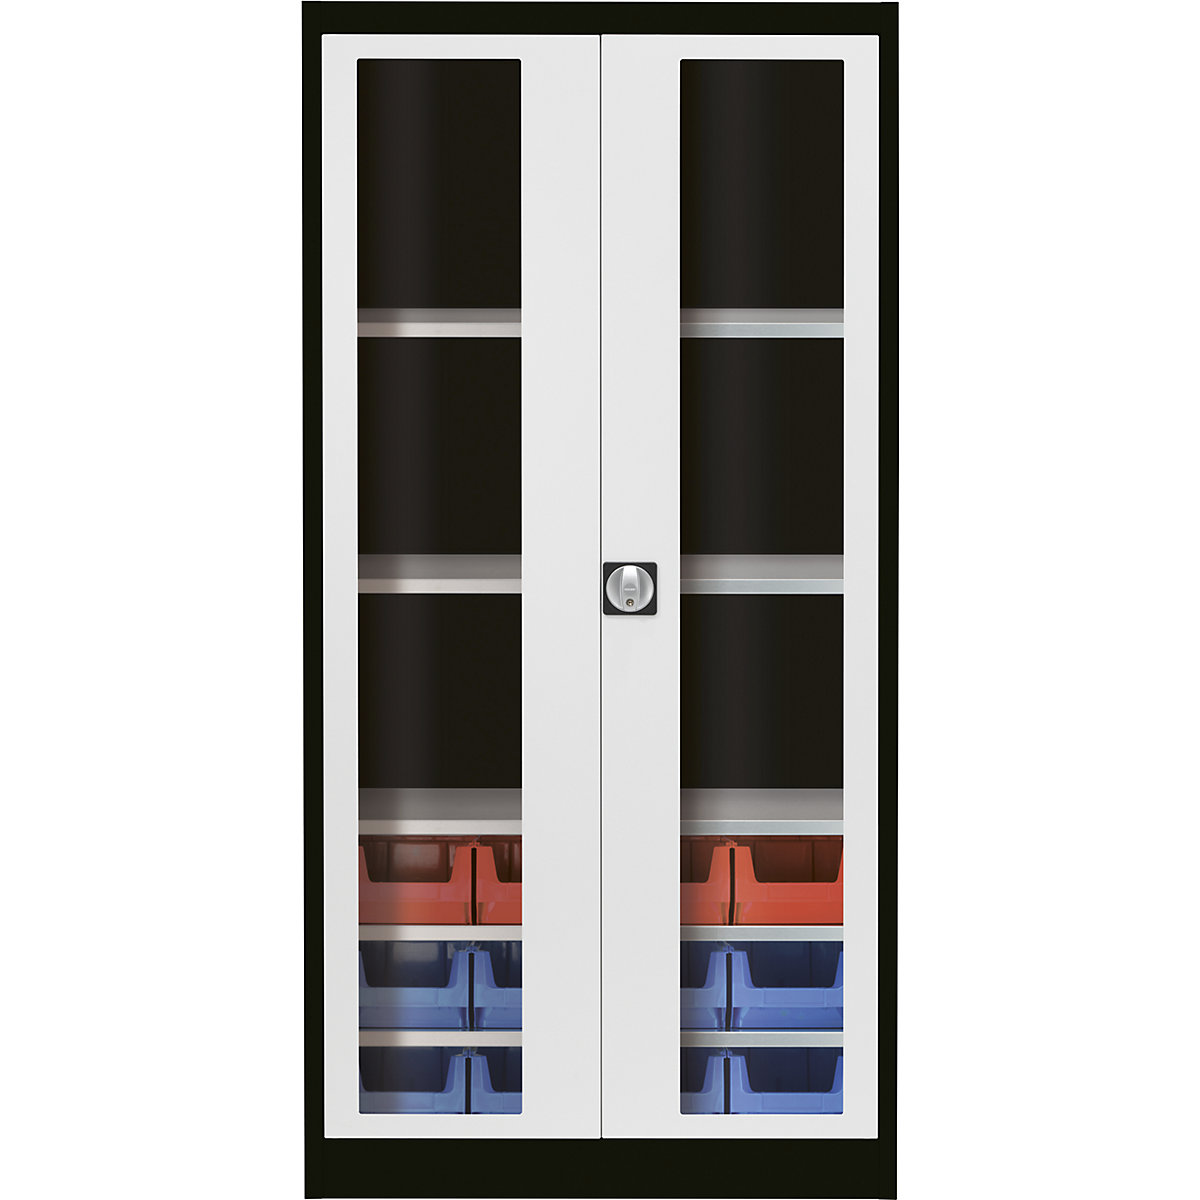 Skriňa s krídlovými dverami s priehľadným okienkom – mauser, s 12 prepravkami s viditeľným obsahom, grafitová čierna / svetlošedá-6